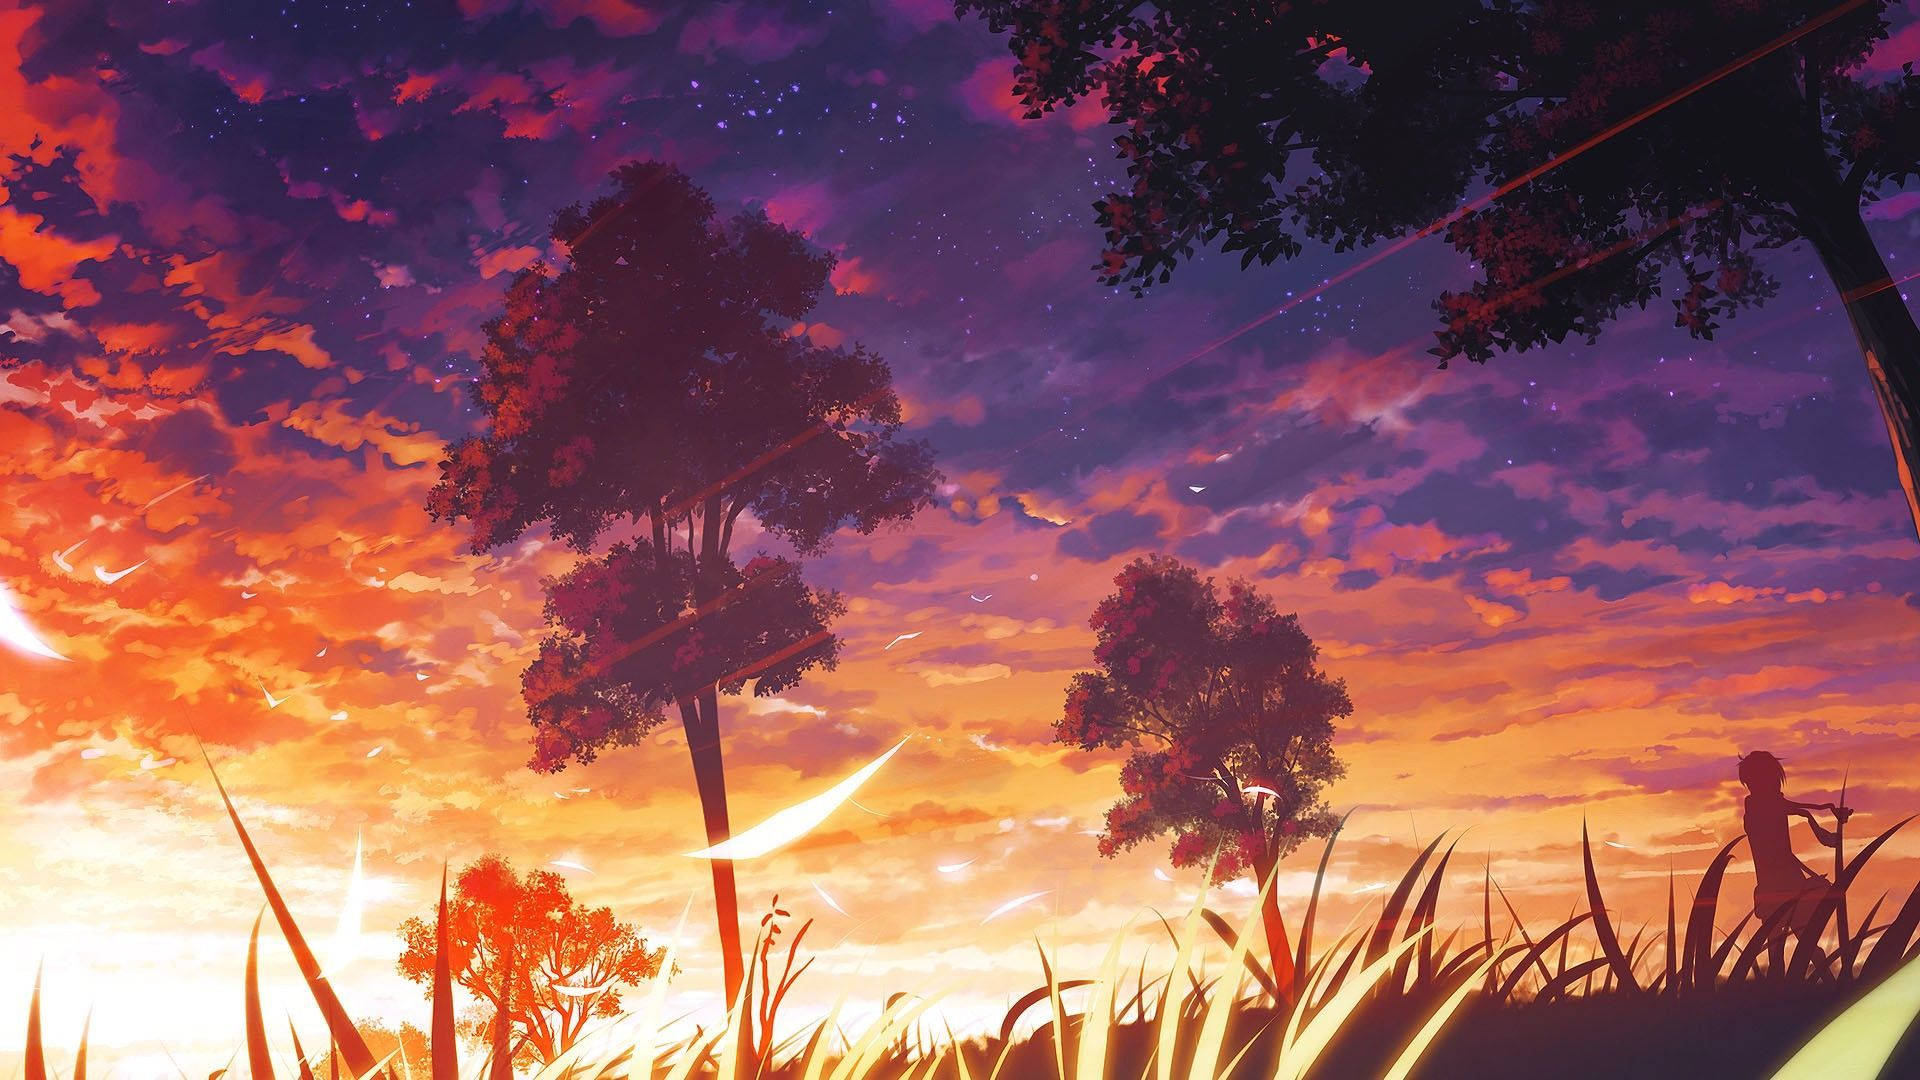 Illuminated Sunset Aesthetic Anime Scenery Background